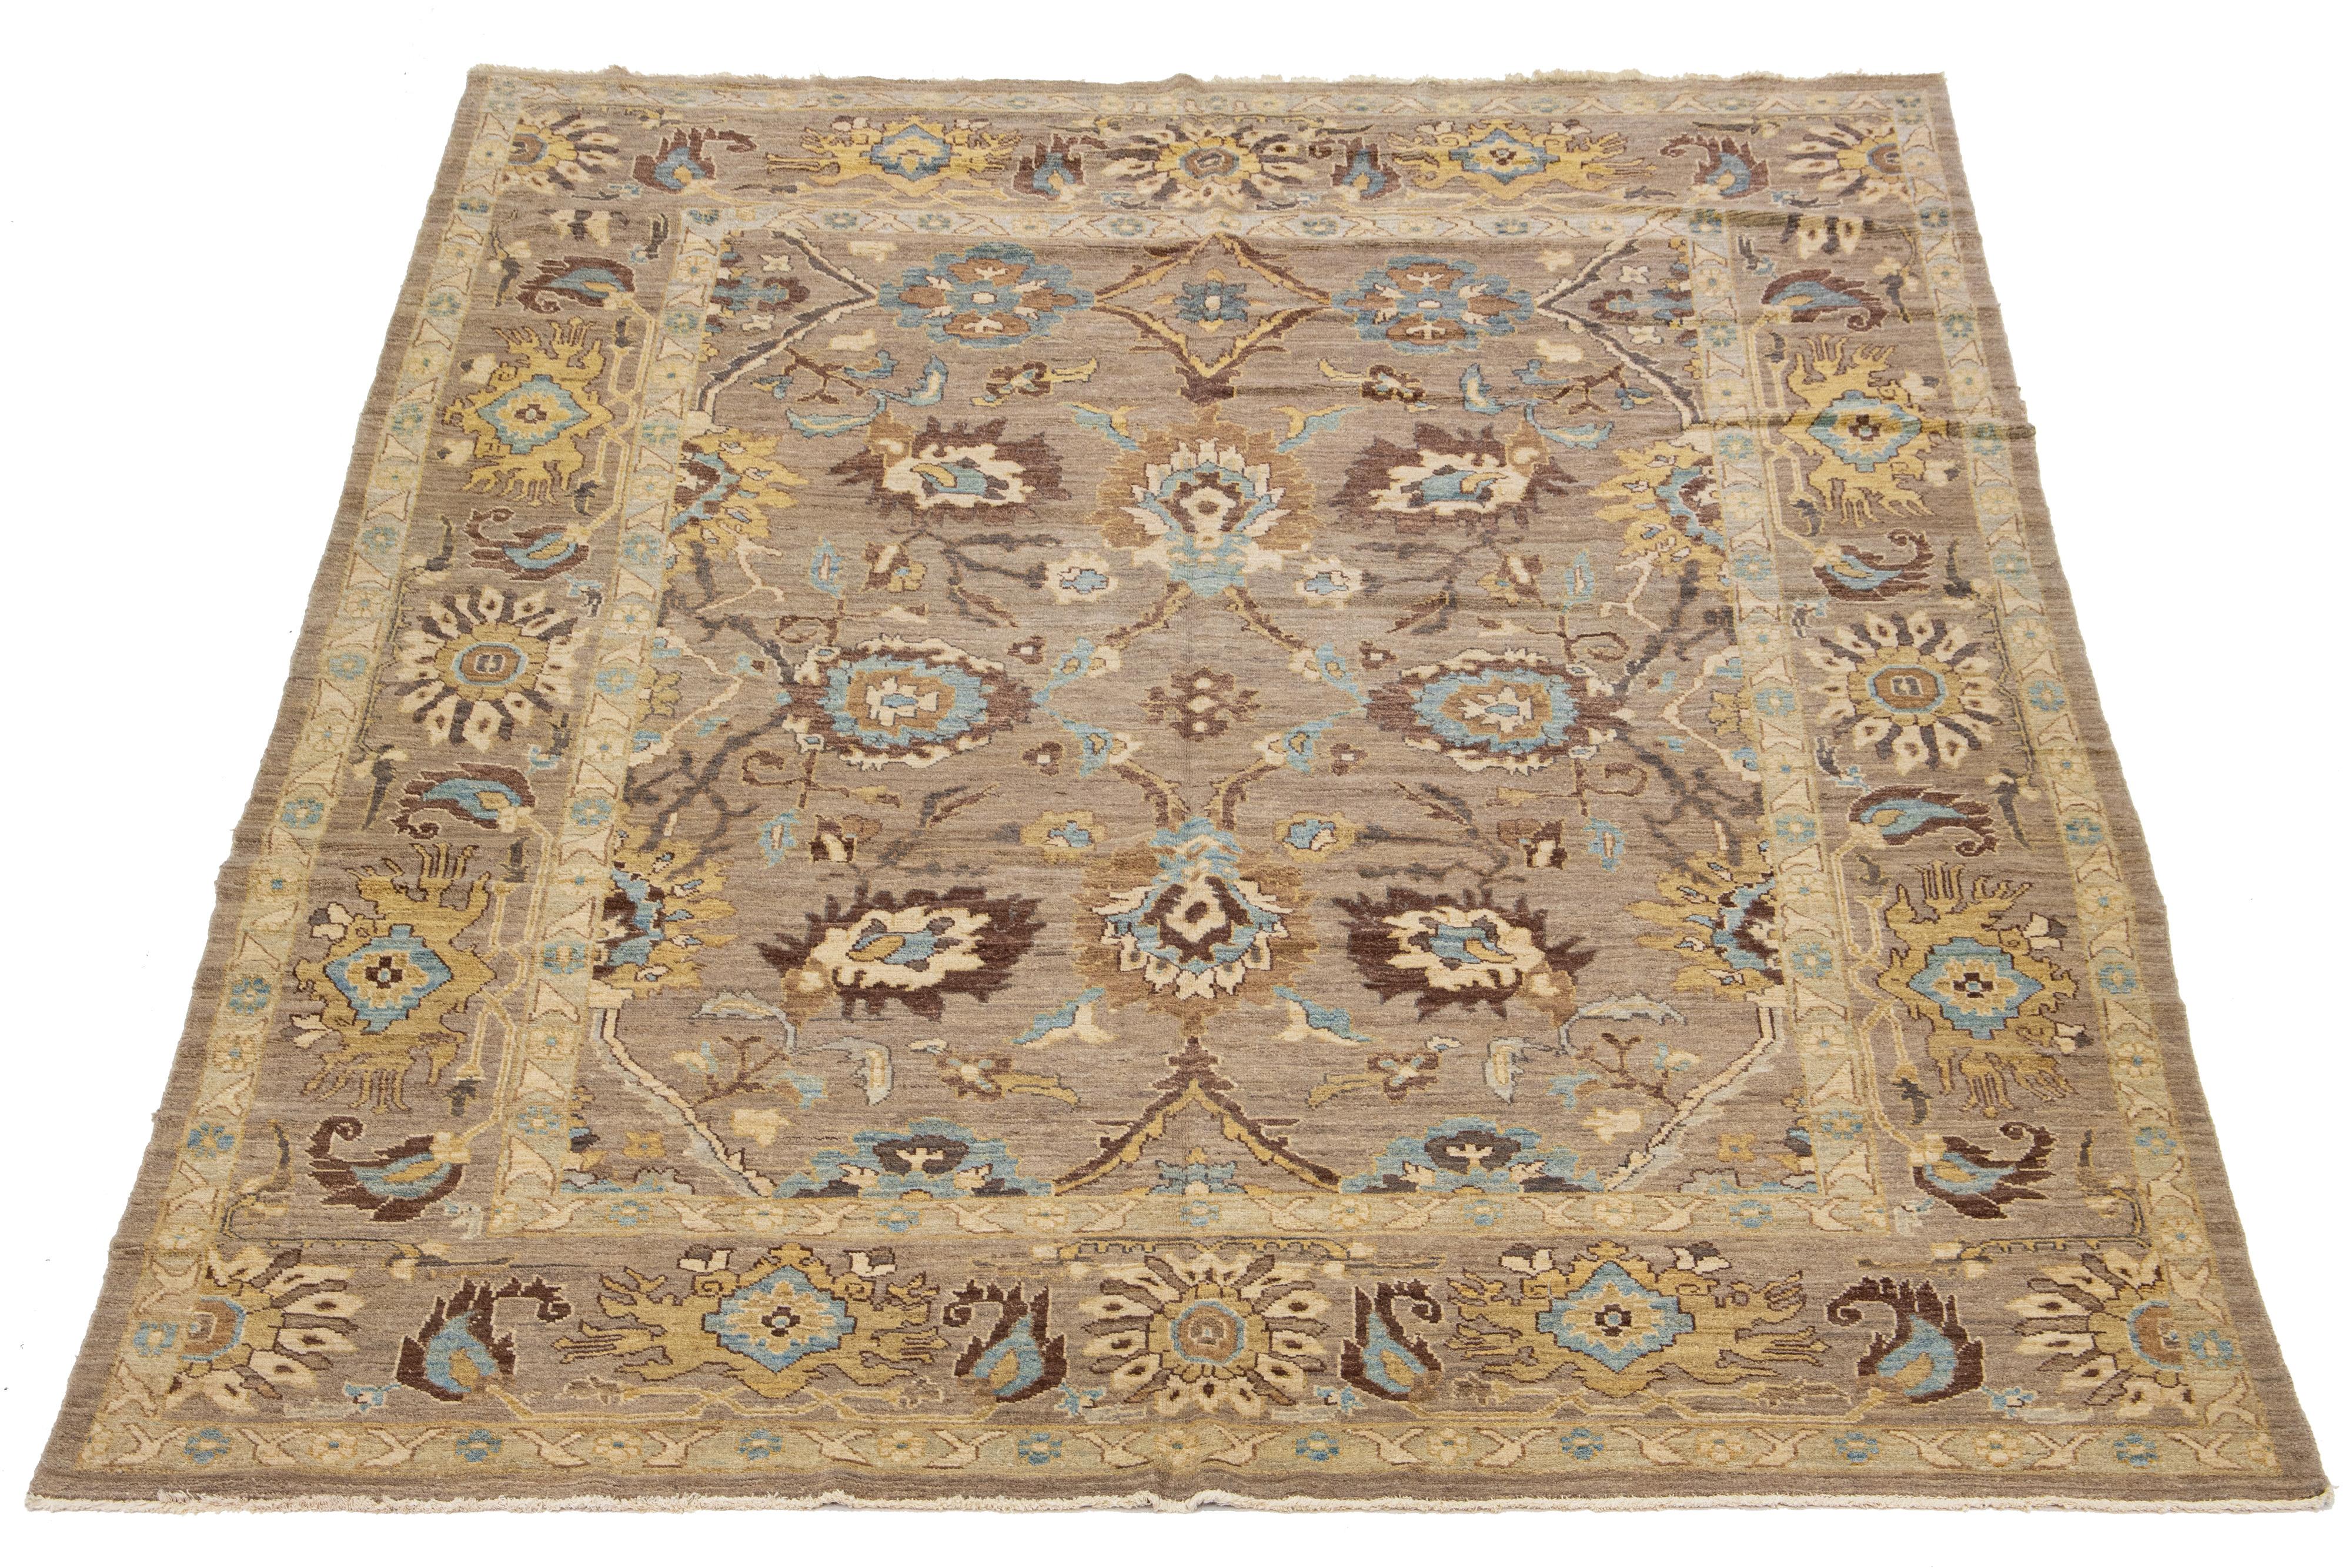 Il s'agit d'un tapis persan moderne Sultanabad avec un champ brun, une large bordure et un motif bleu clair et jaune.

Ce tapis mesure 9'9'' x 12'8''.